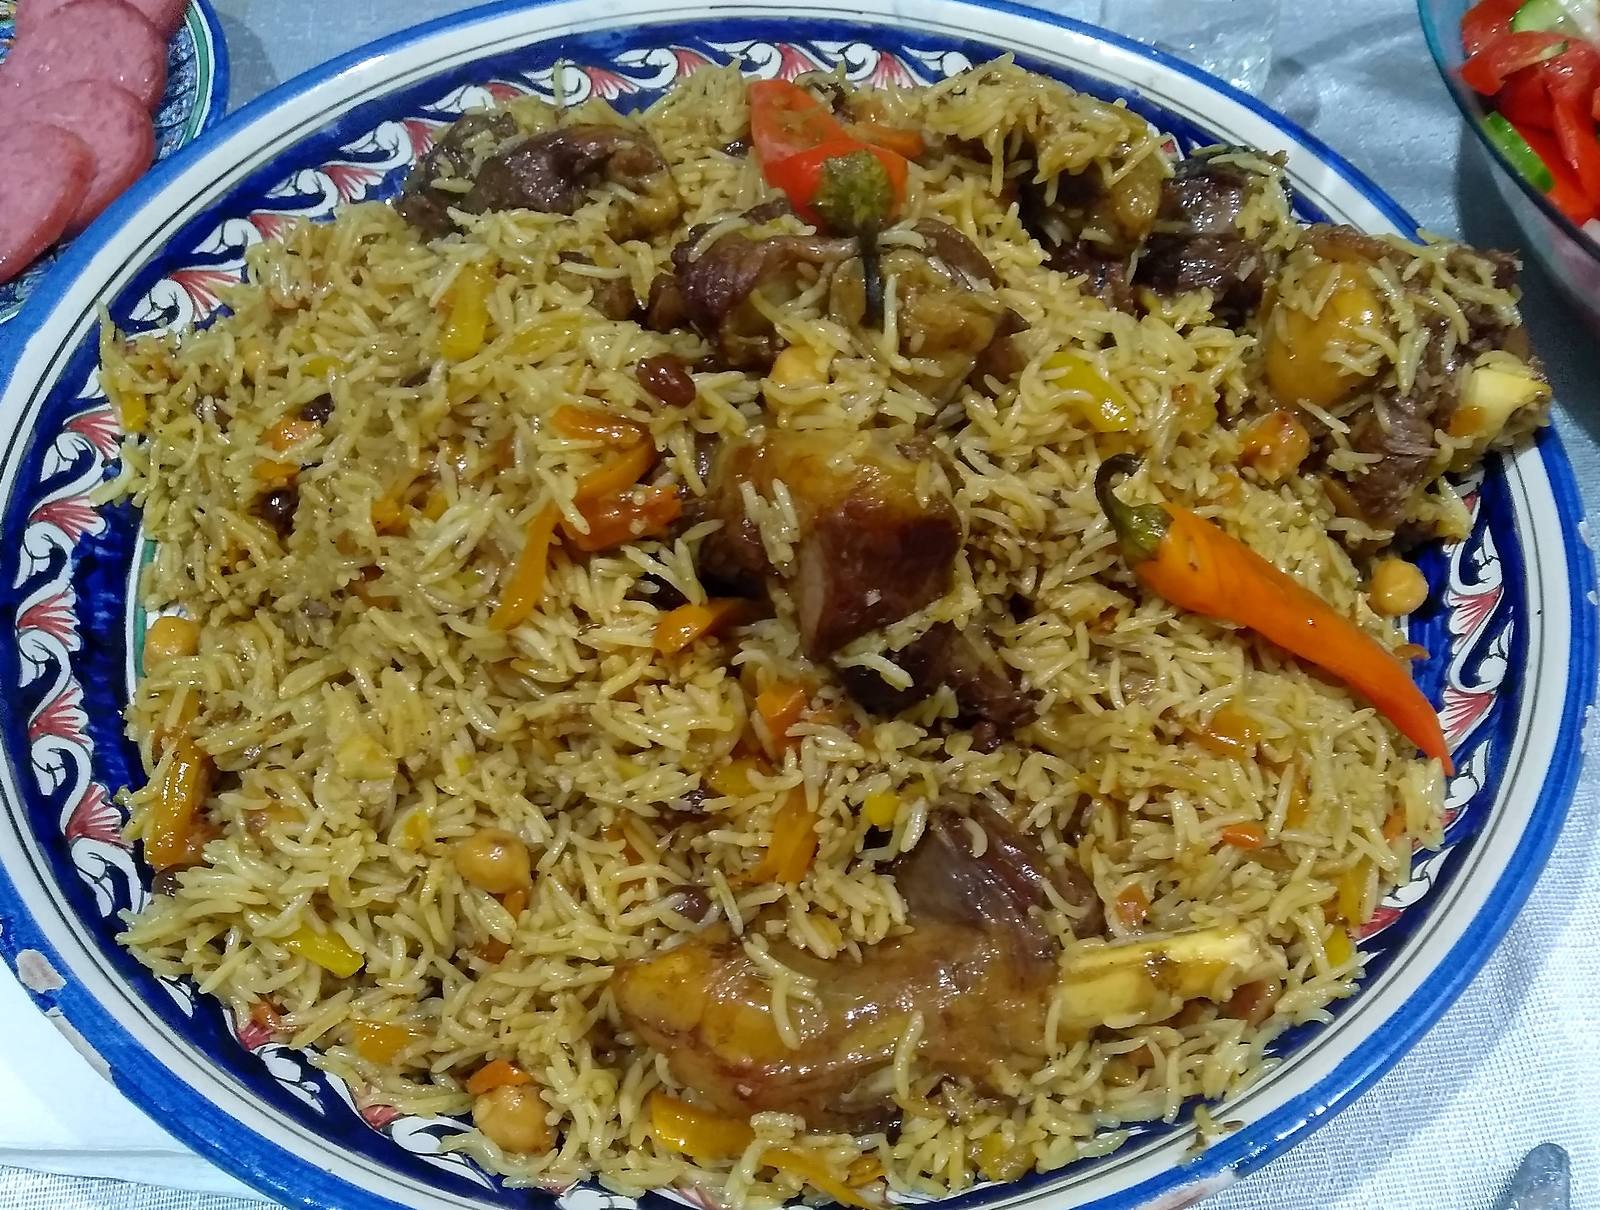 Почему рис в плове. Рис басмати для плова. Узбекский рис для плова басмати. Индийский рис для плова басмати. Плов из риса басмати.